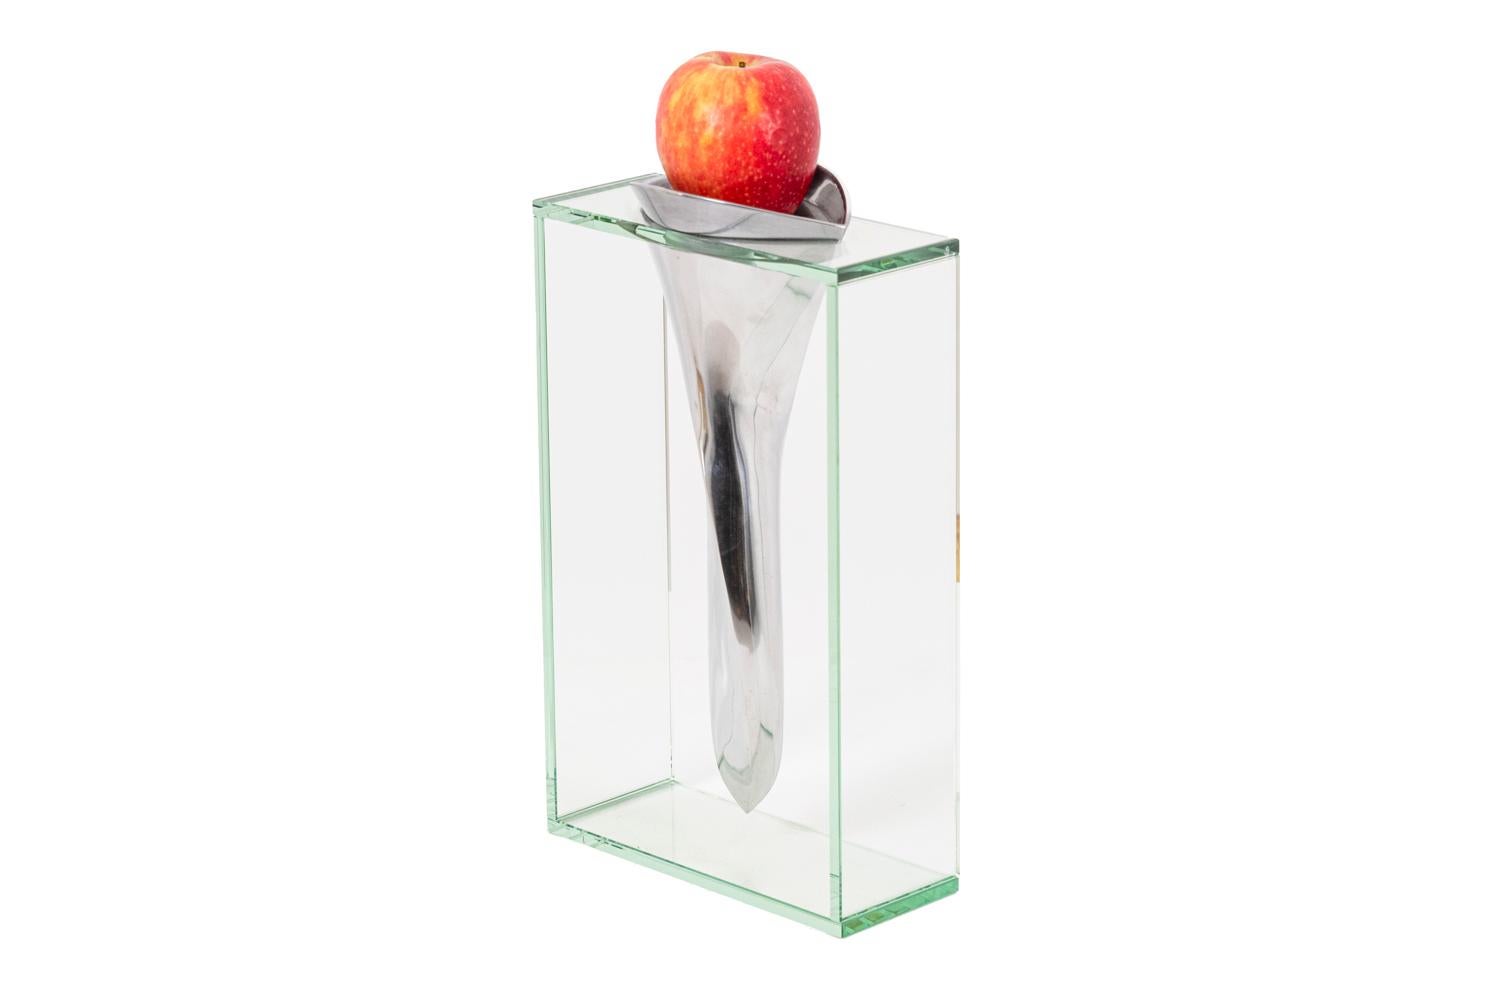 Lisa Mori, attribuée. 

Le vase de forme organique en fonte d'aluminium poli est suspendu à une structure rectangulaire en verre.

Œuvre réalisée dans les années 1980.